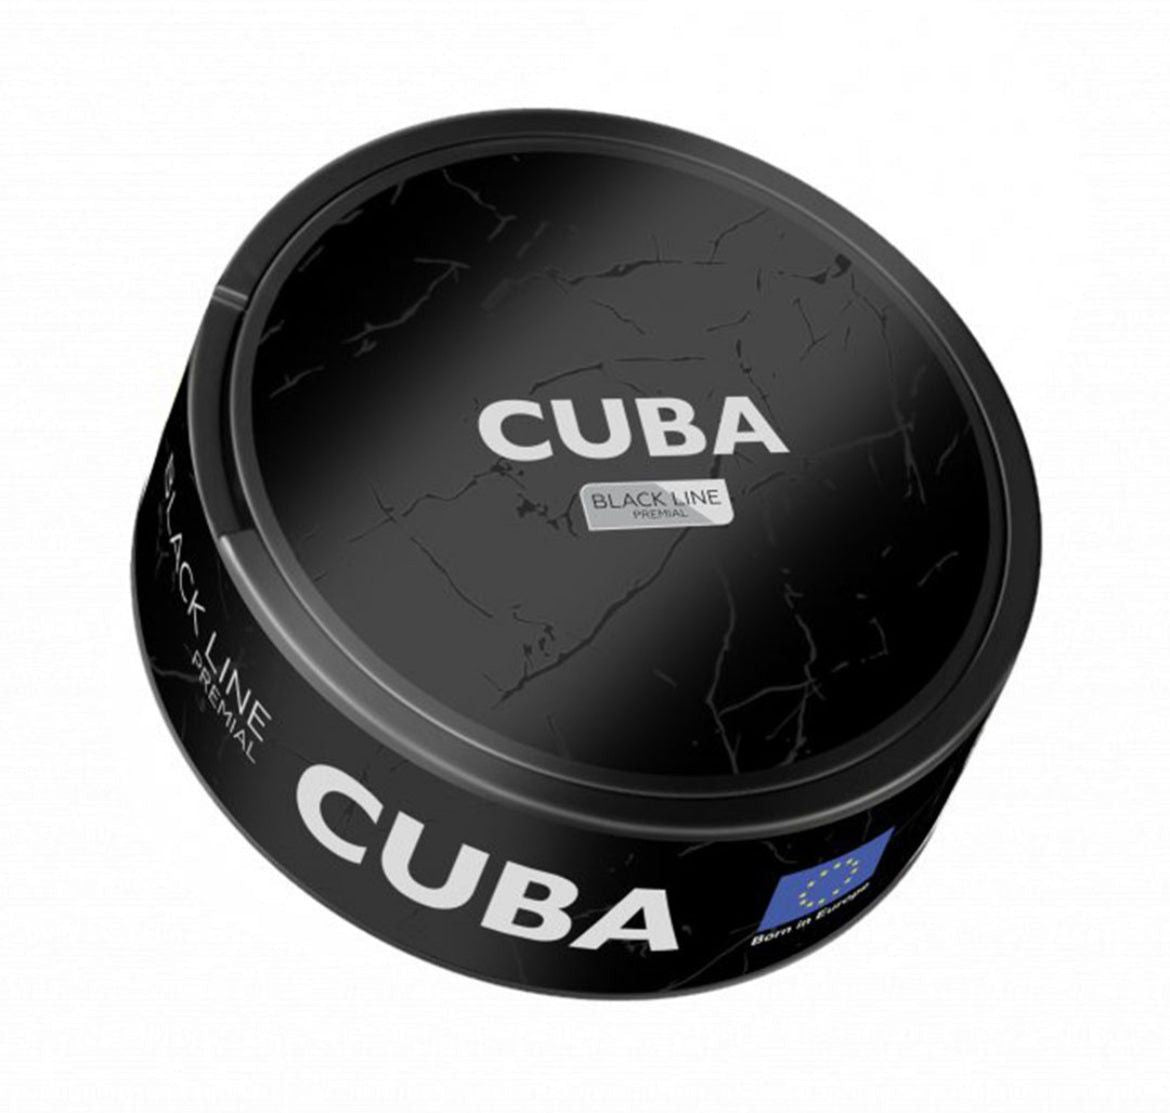 Cuba Black Line.